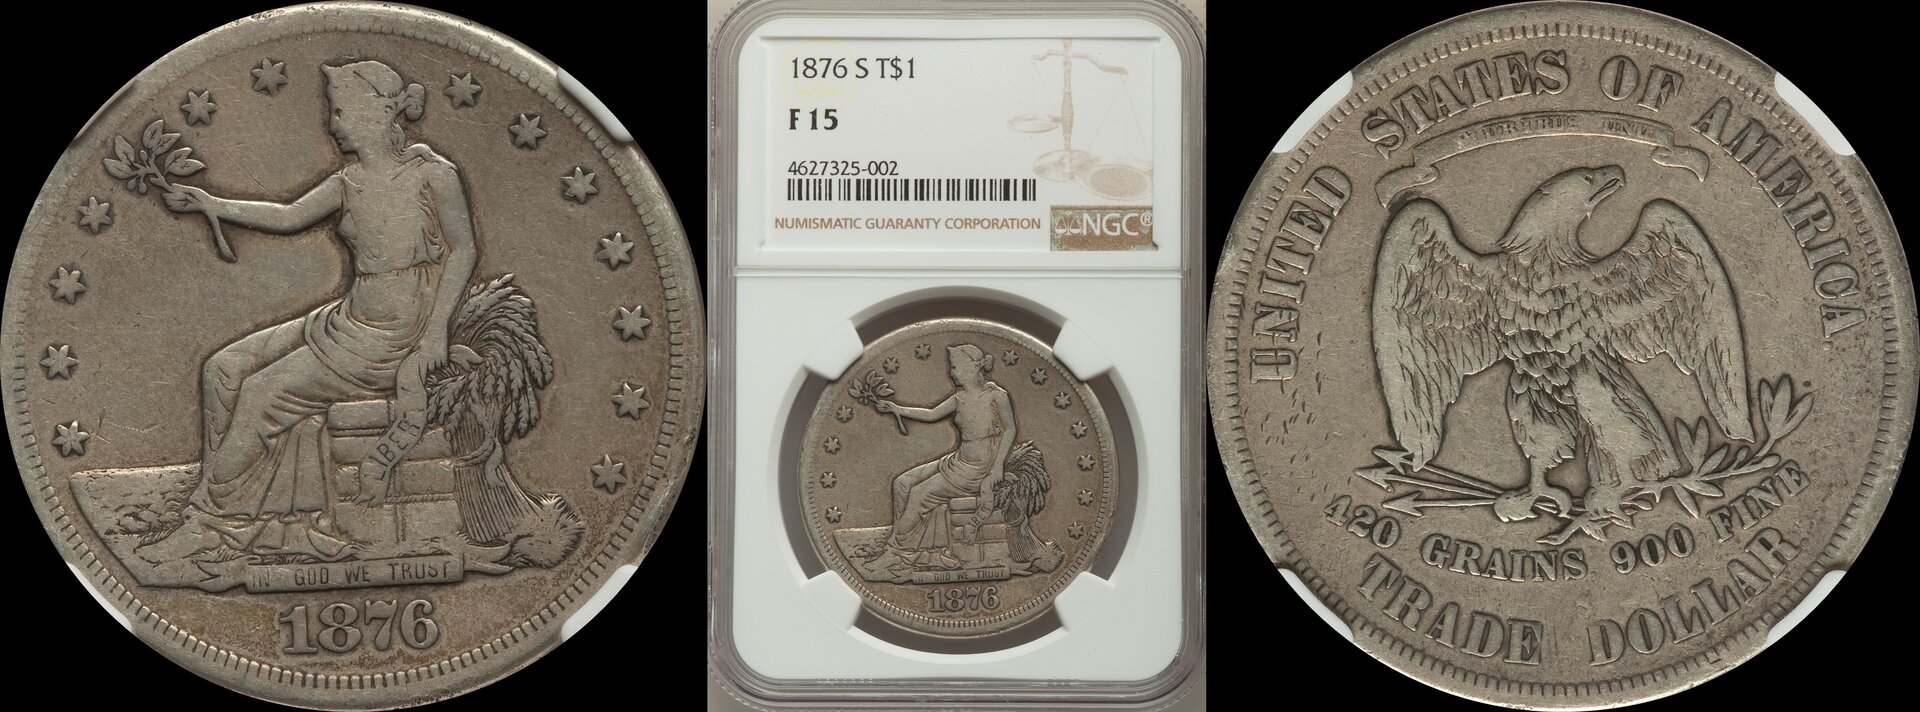 1876 S Trade dollar.jpg